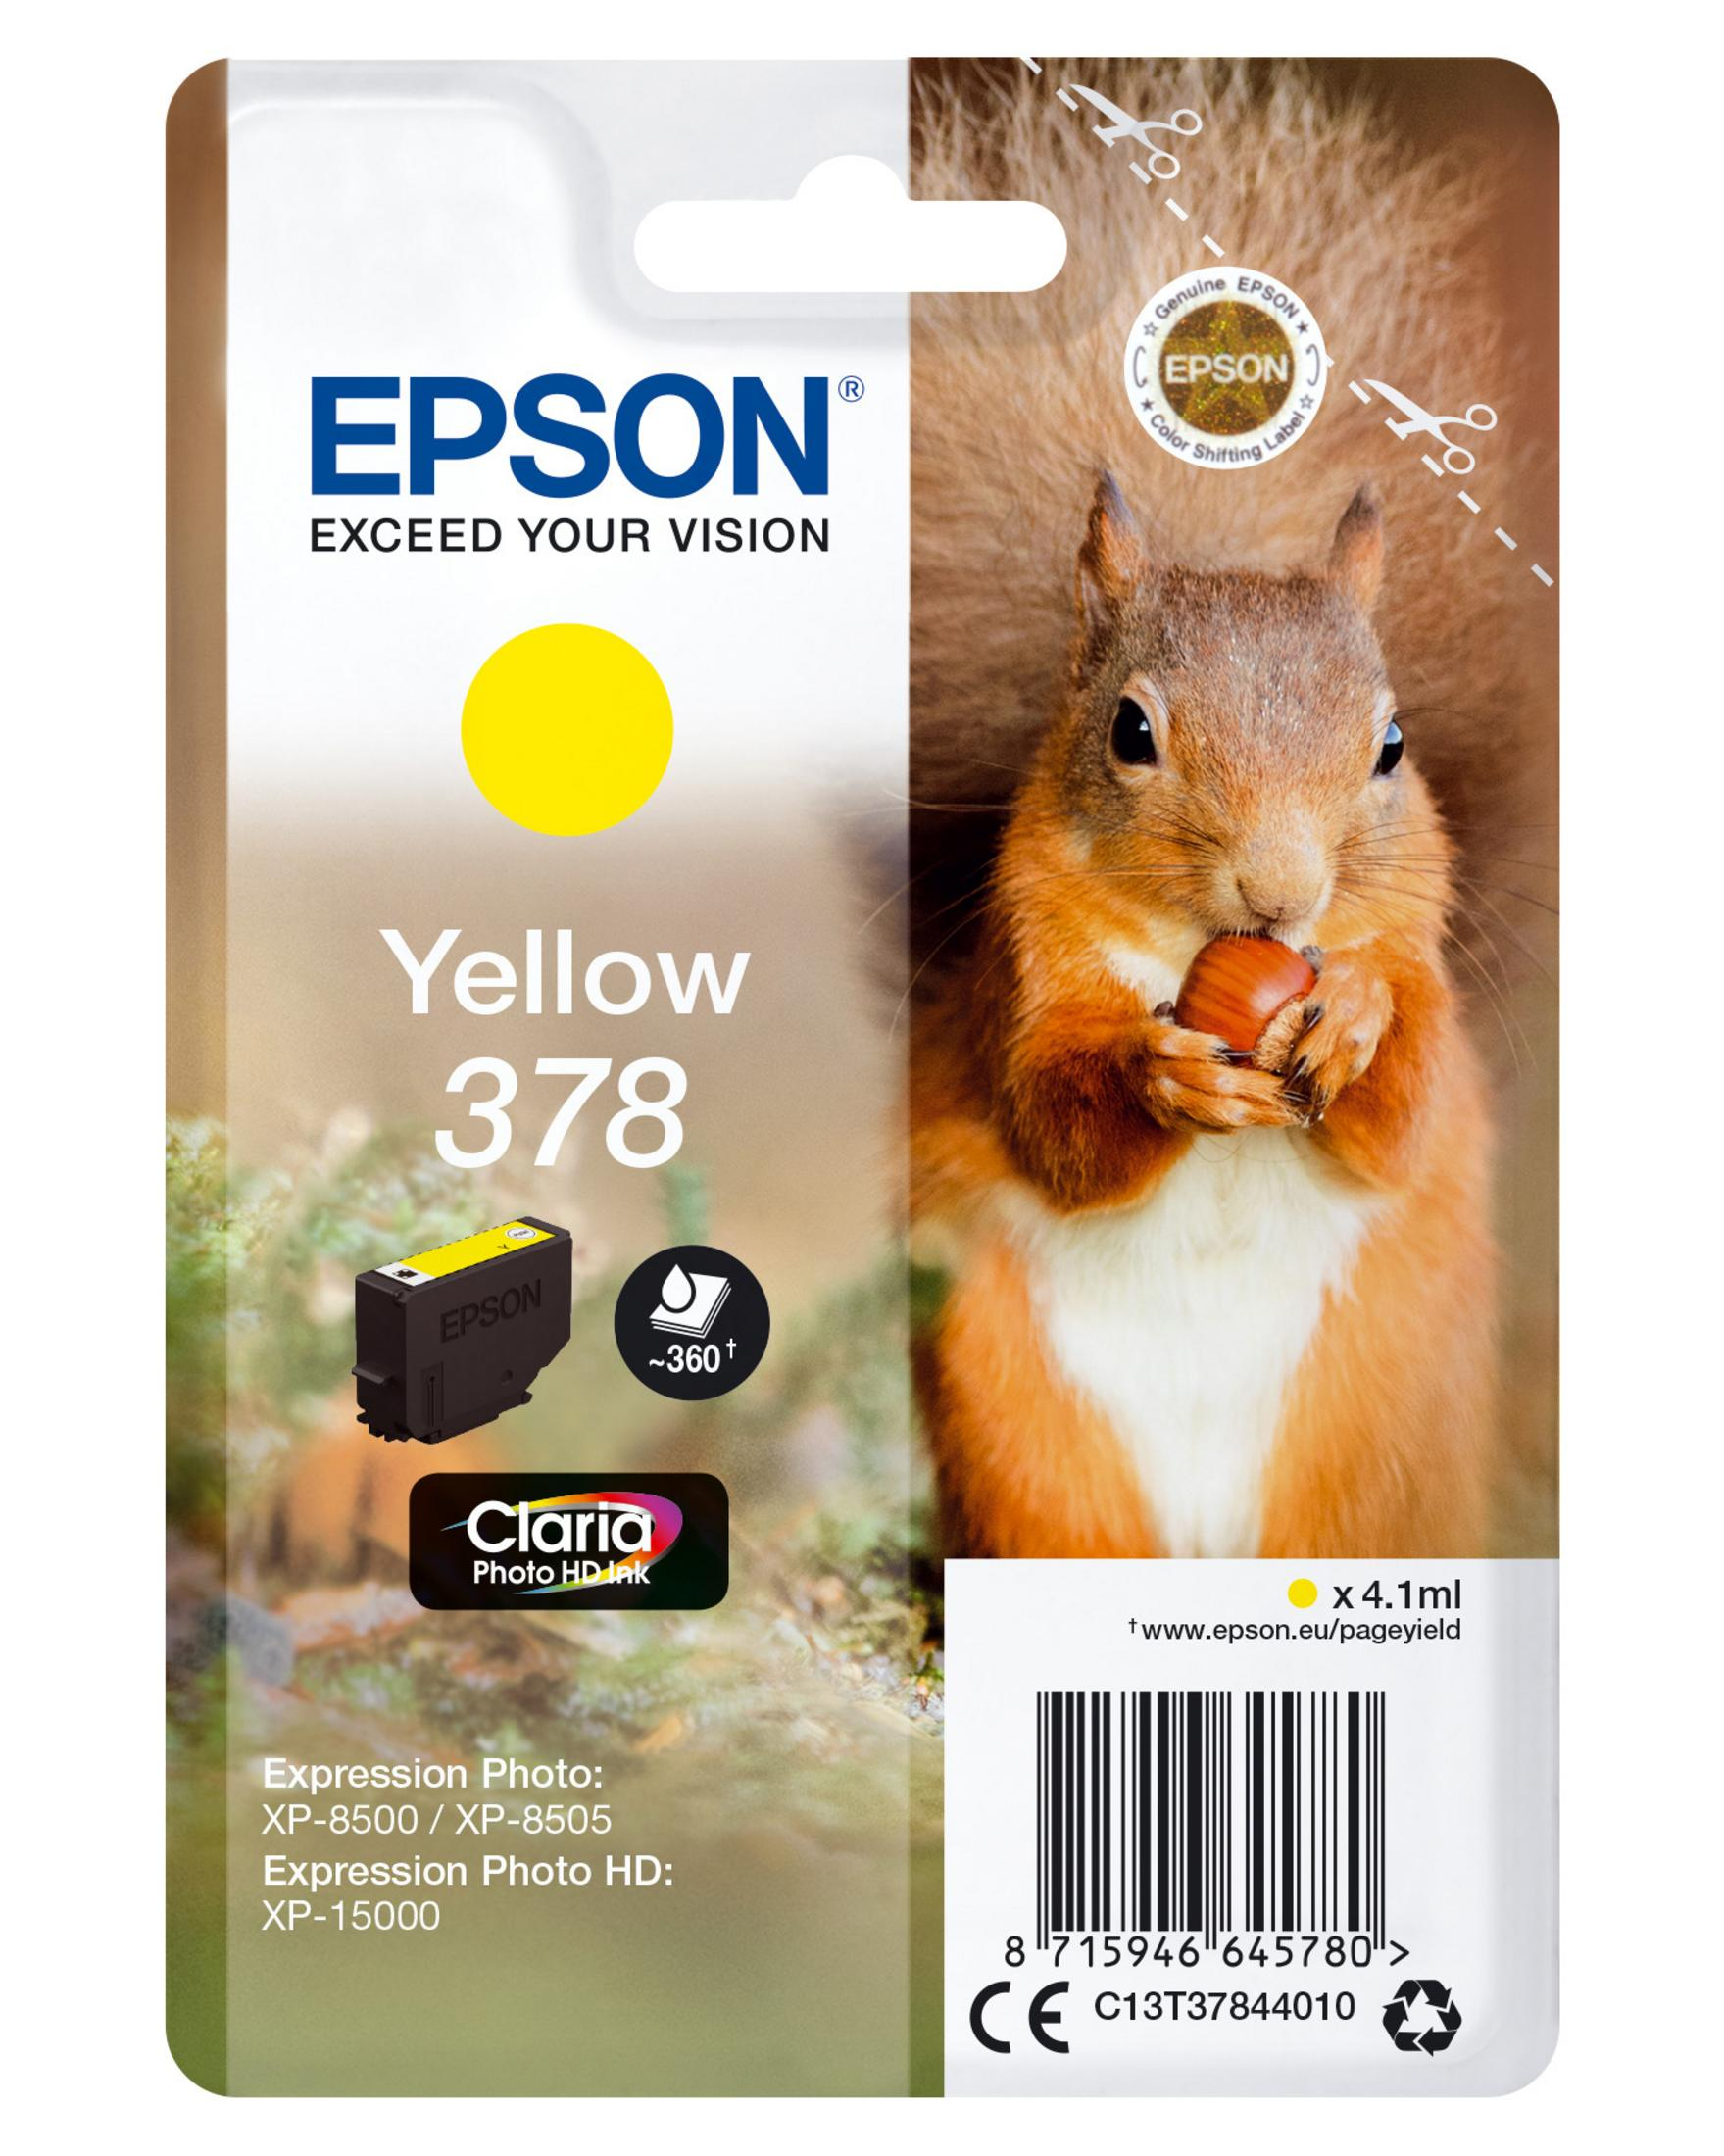 EPSON 378 Tinte yellow (C13T37844010)